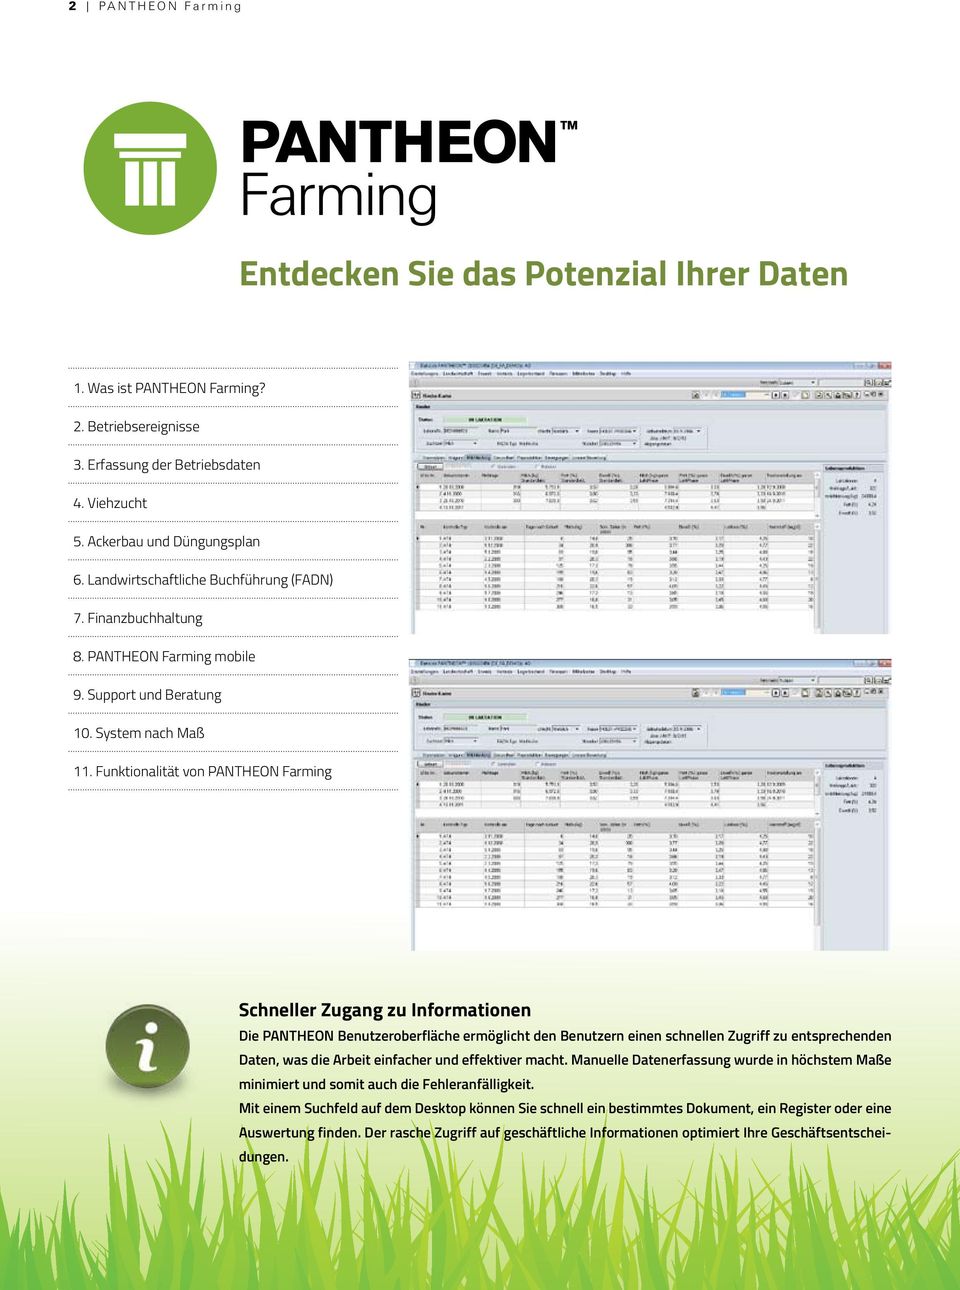 Funktionalität von PANTHEON Farming Schneller Zugang zu Informationen Die PANTHEON Benutzeroberfläche ermöglicht den Benutzern einen schnellen Zugriff zu entsprechenden Daten, was die Arbeit